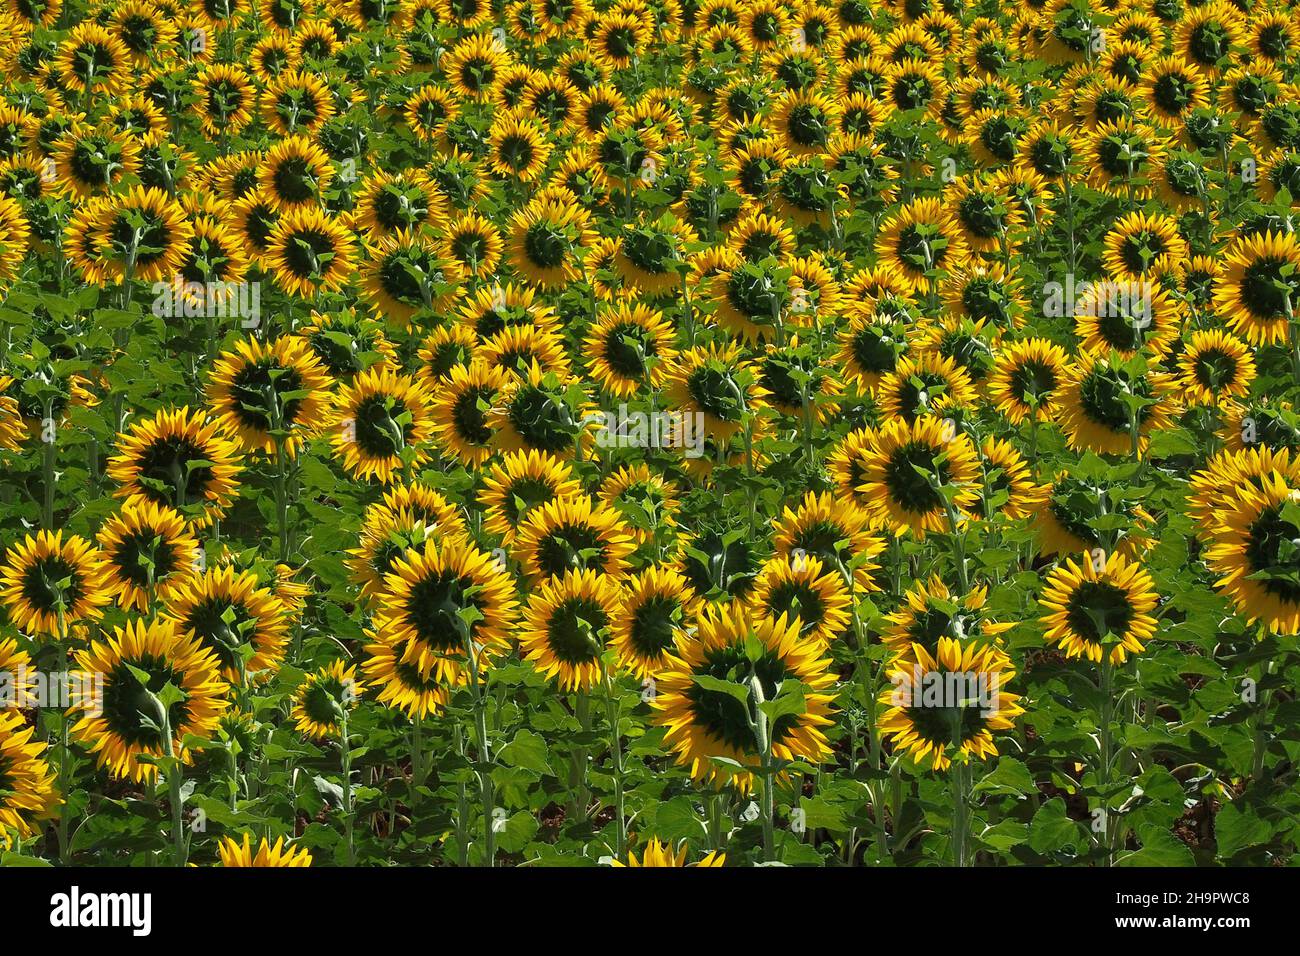 Feld mit Sonnenblumen, Sonnenblumenköpfe von der Sonne abgewandt, Sonnenblumen (Helianthus), Verbundpflanzen (Asterngewächse), Aster-ähnliche Photosynthese Stockfoto